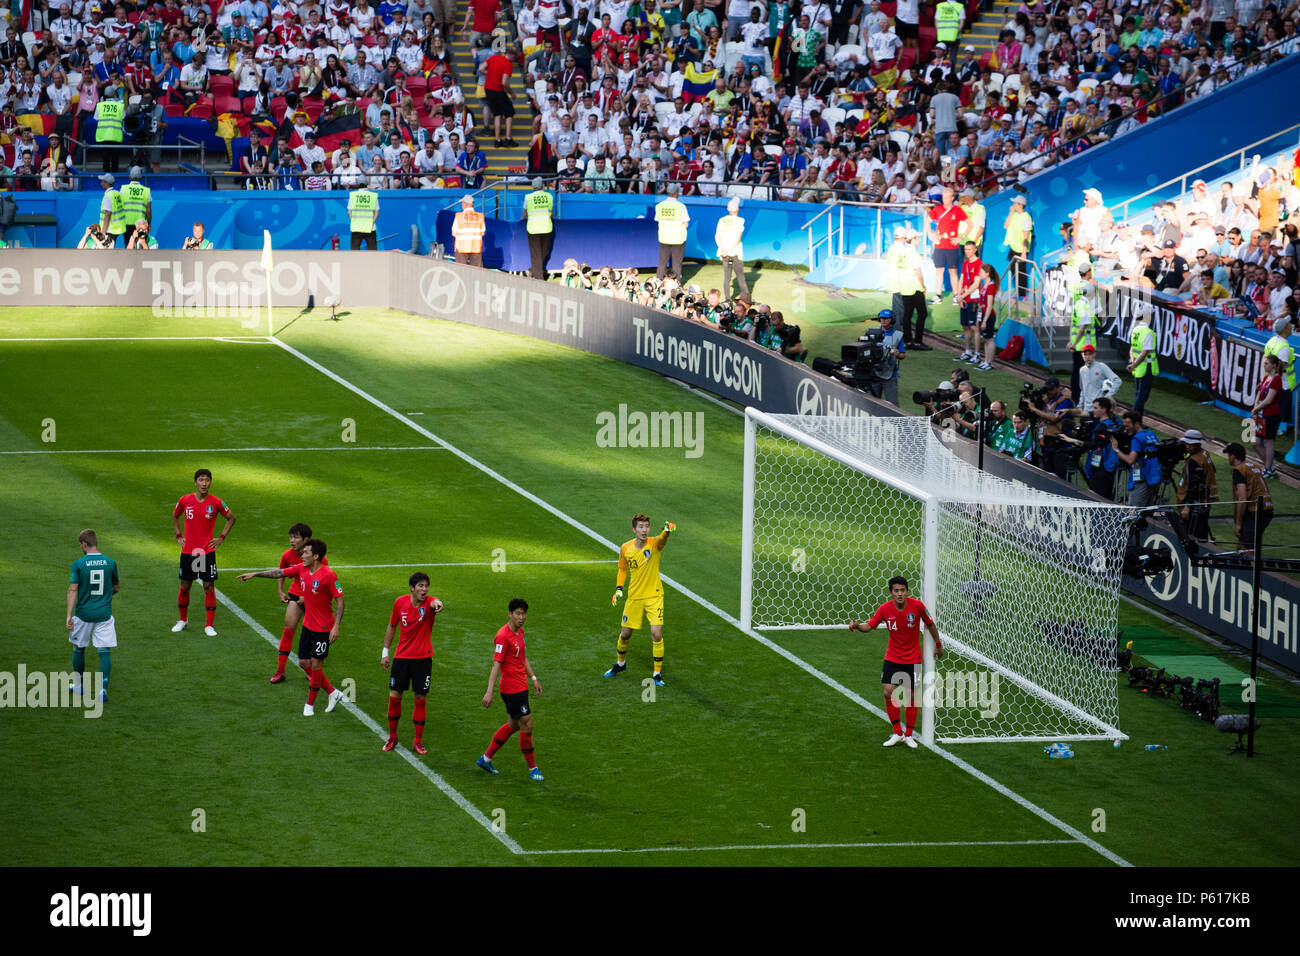 L'équipe nationale de football de Corée République bat l'Allemagne lors de la Coupe du Monde Russie 2018 à Kazan en Russie. Banque D'Images